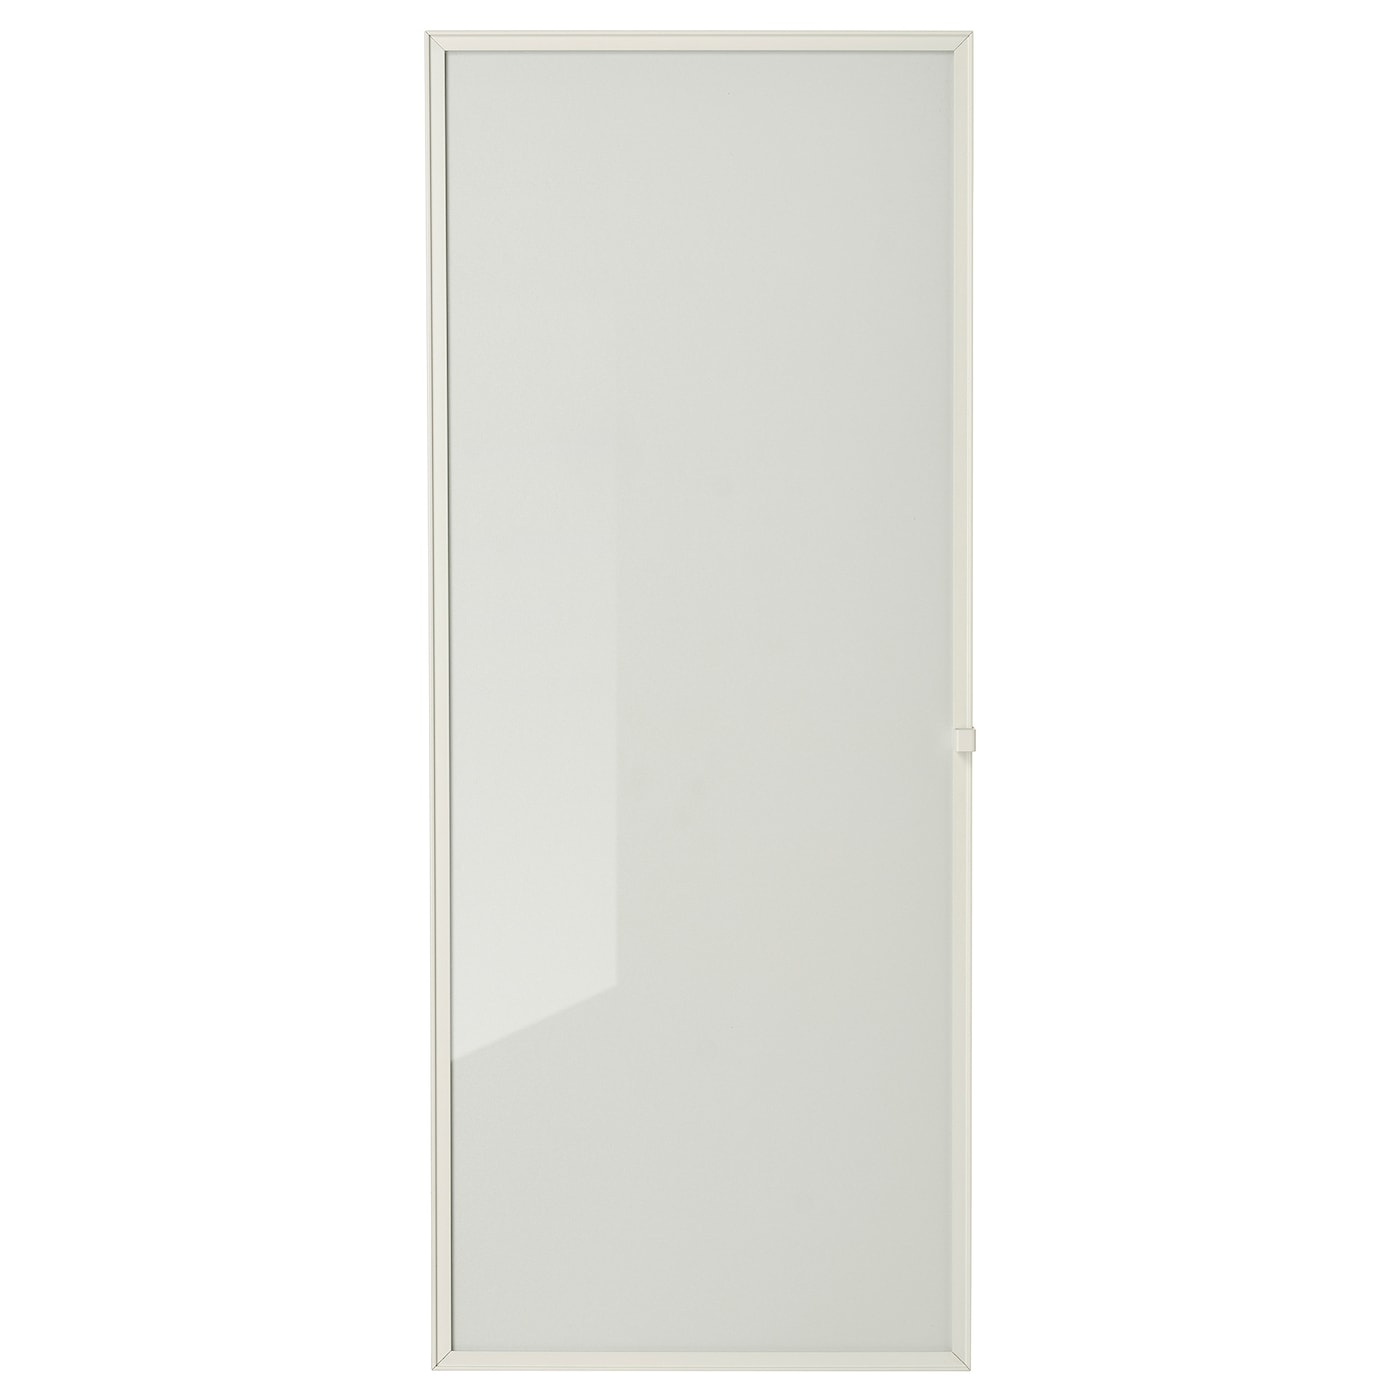 Дверца книжного шкафа - HÖGBO / HOGBO  IKEA/ ХОГБО ИКЕА, 40х97 см,  серо-коричневый